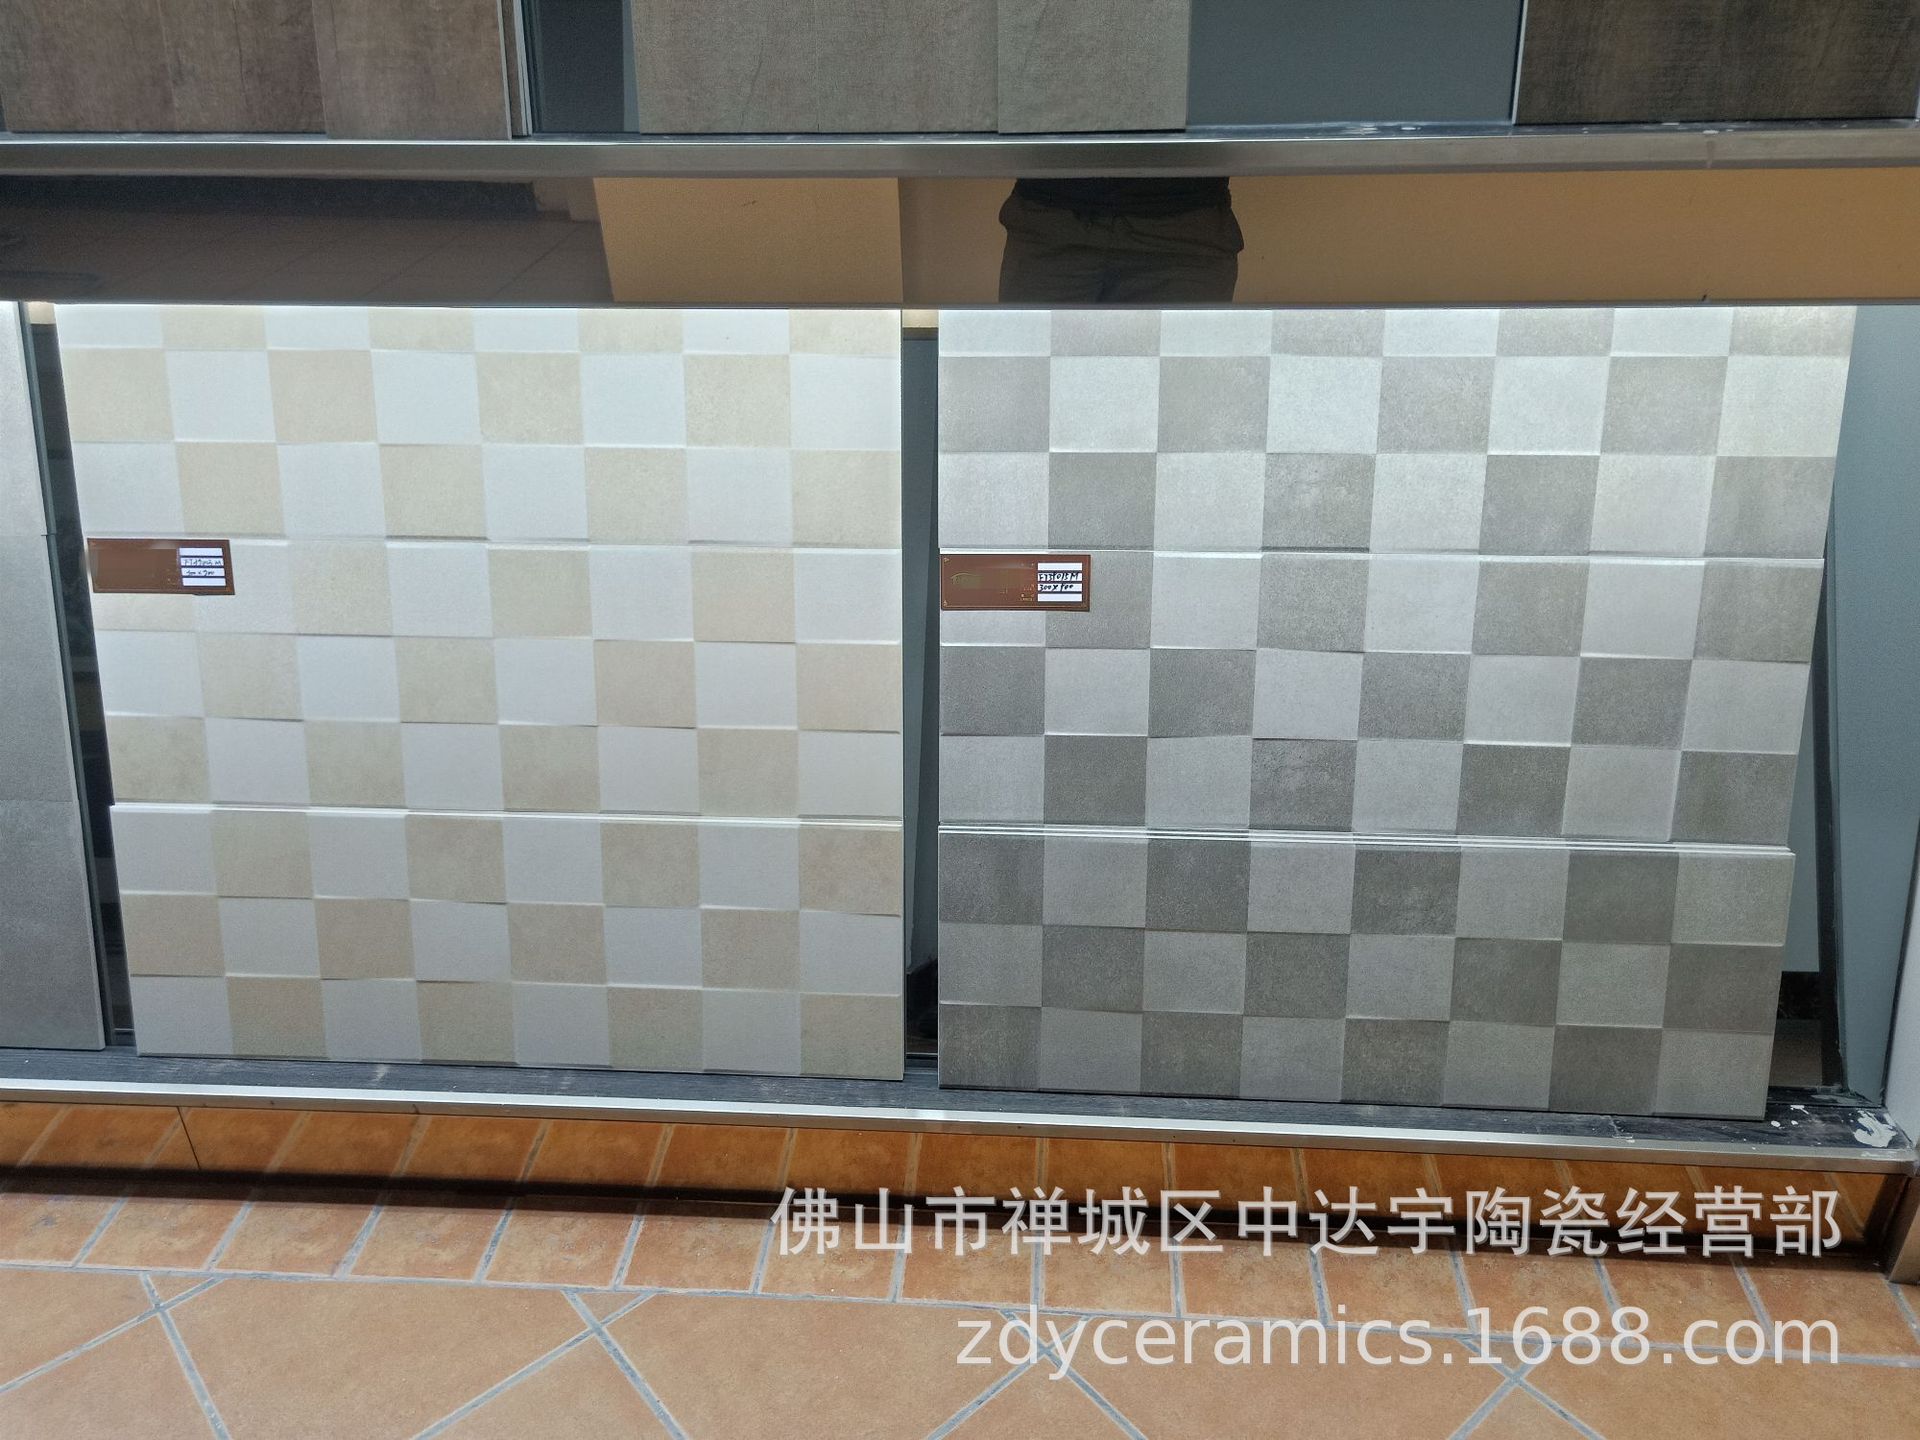 佛山新系列300X900mm 仿古瓷砖防滑防潮客厅厨房浴室墙面砖地面砖JXHD390示例图21